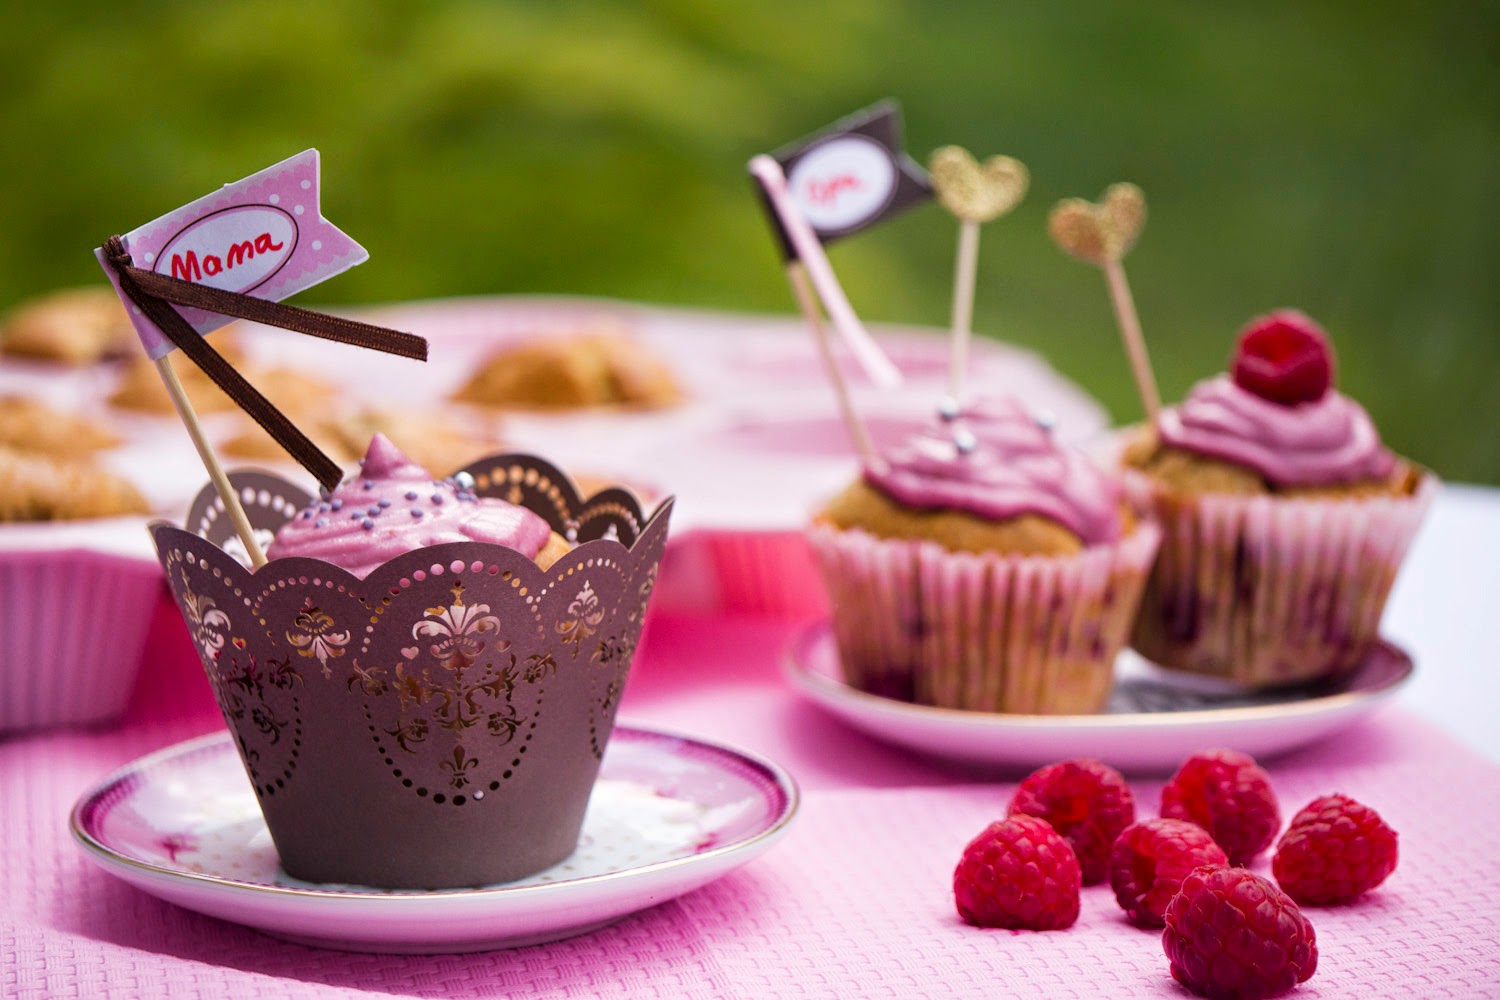 Köstliche Himbeer Cupcakes für den Muttertag oder den Geburtstag